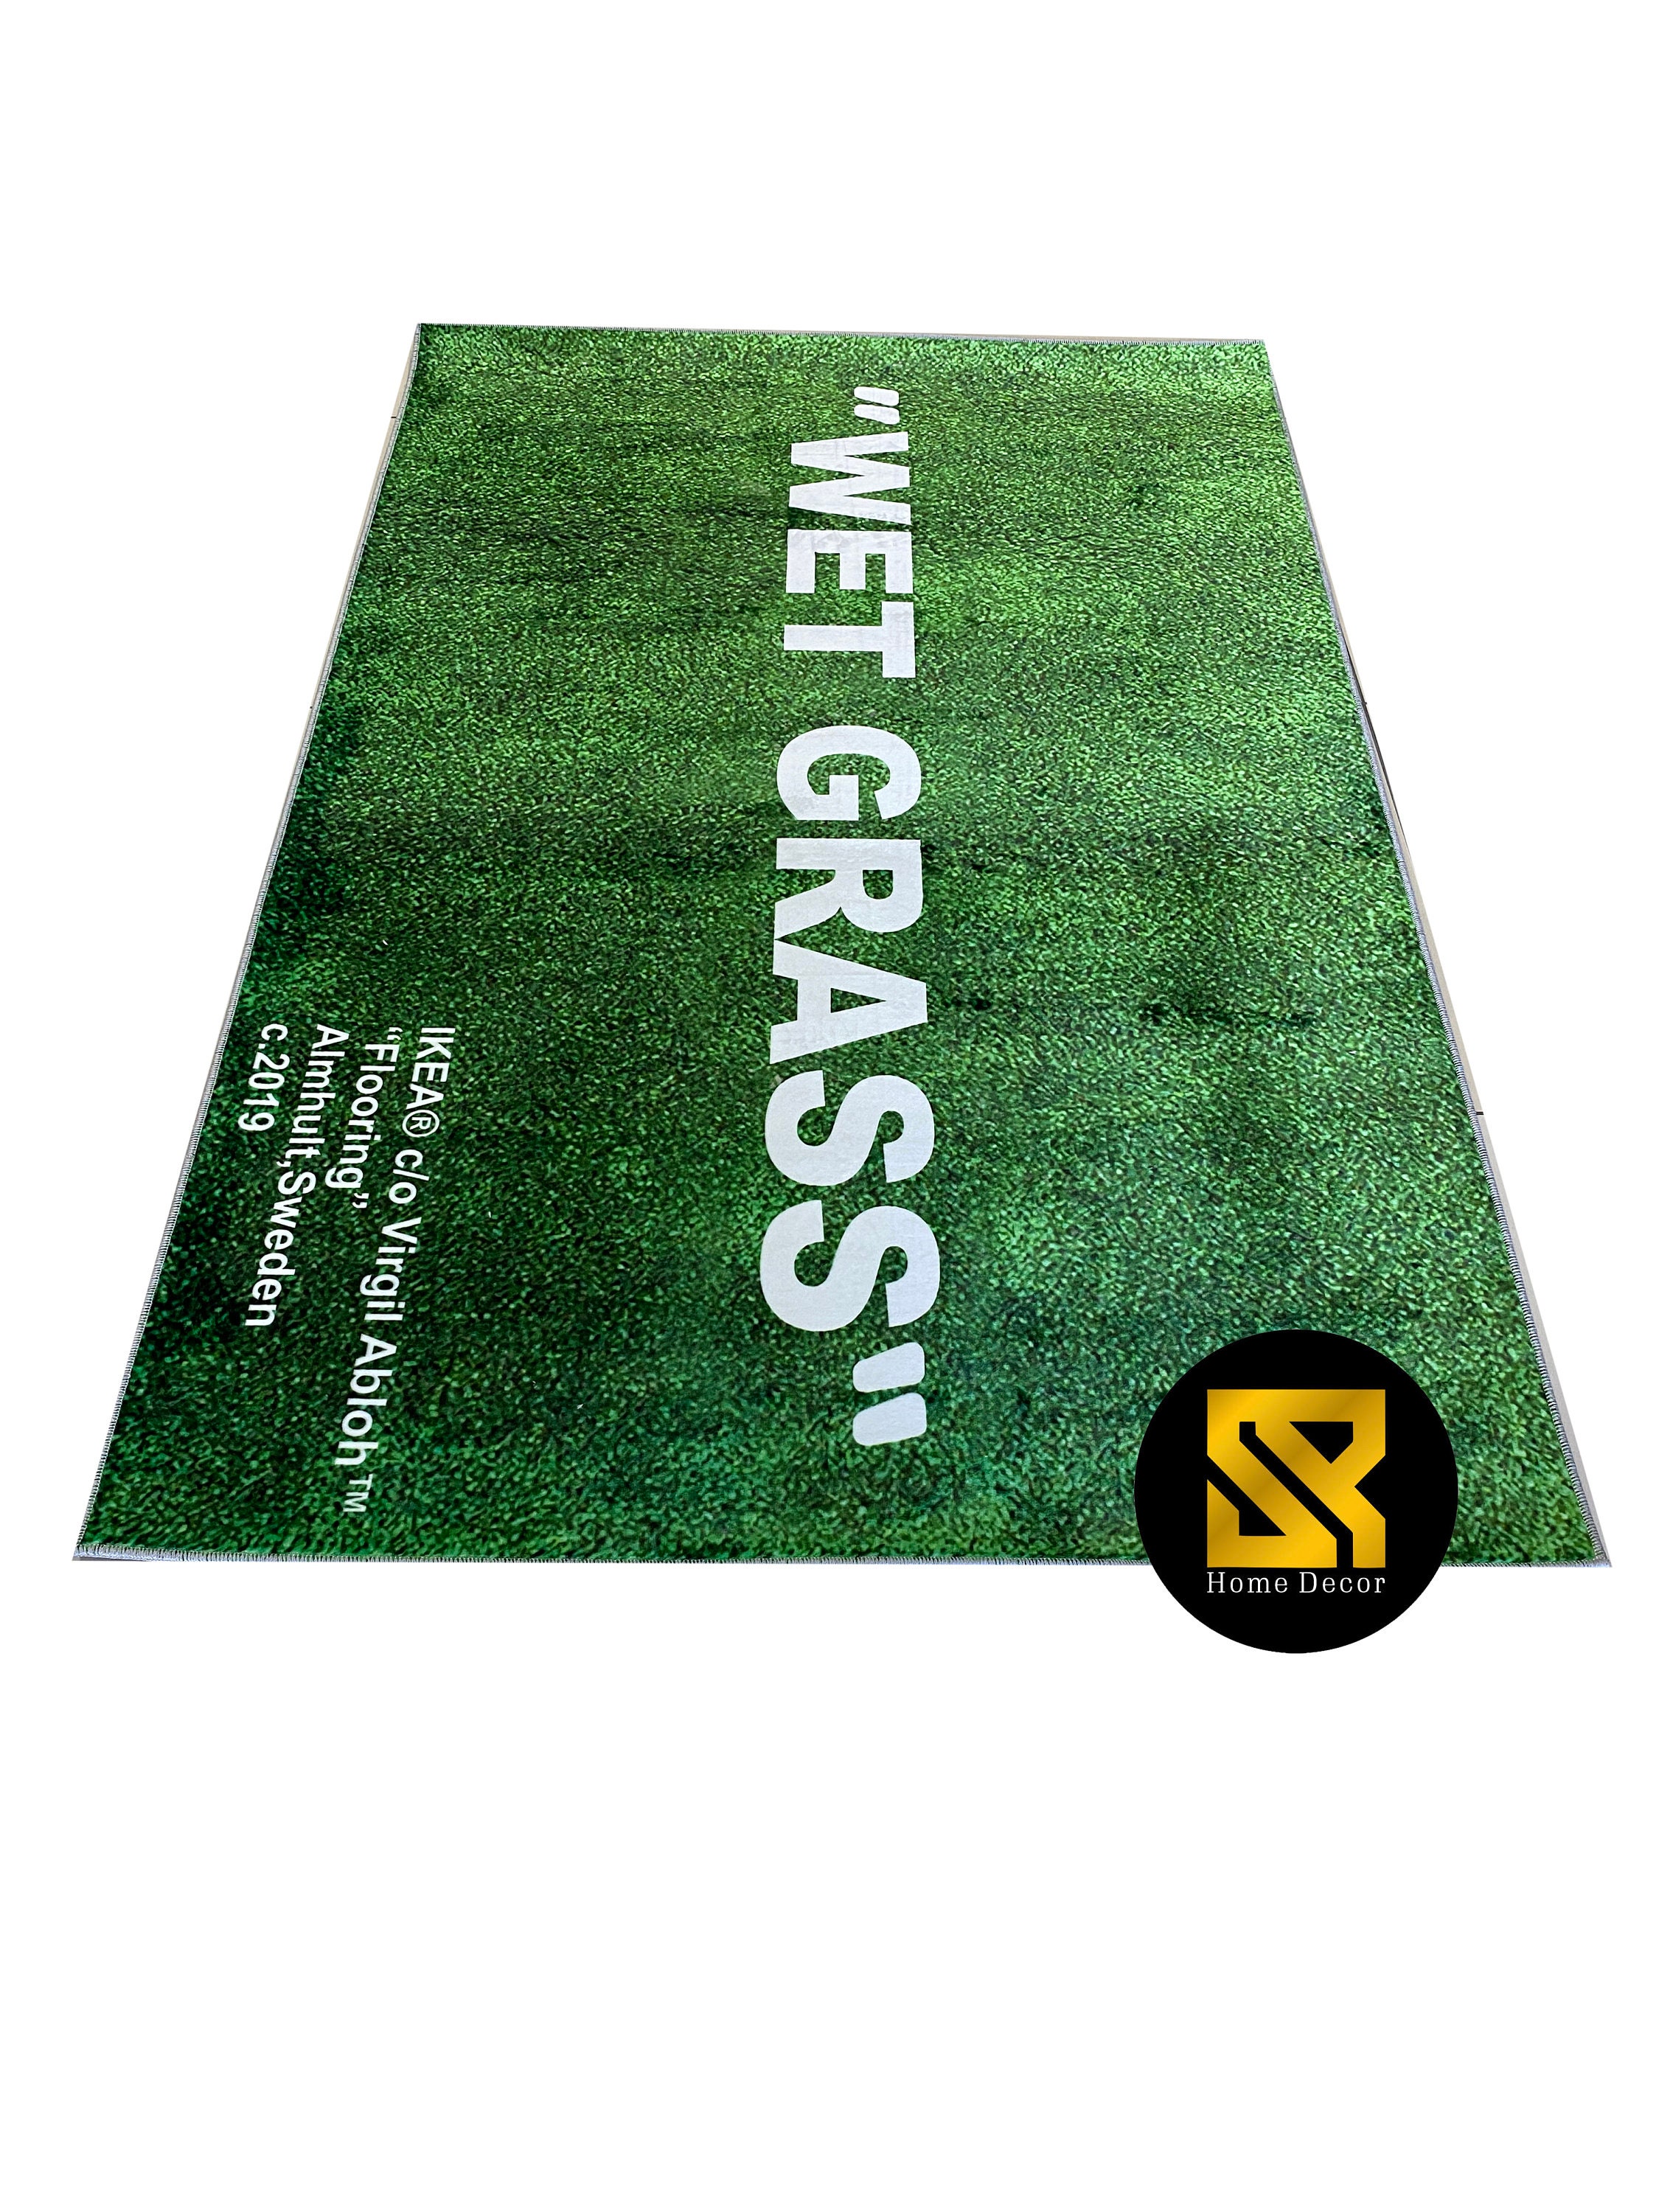 Wet-grassfantastic Ruggreen Decorgreen Rugwet Grass 